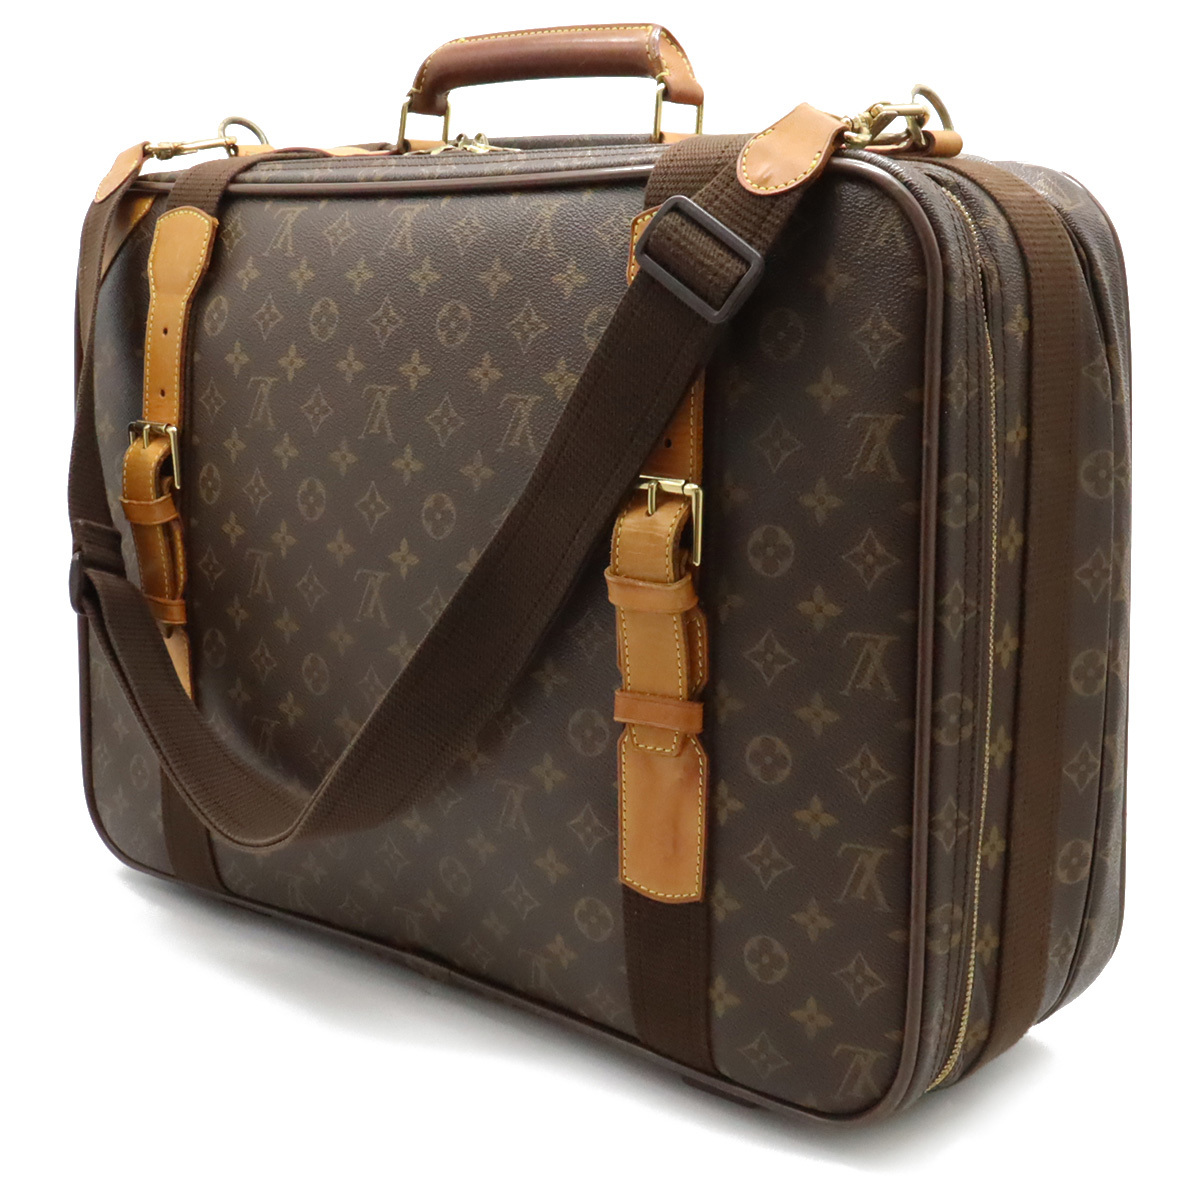 LOUIS VUITTON Louis Vuitton monogram satellite 53 suitcase travel bag travel bag 2WAY